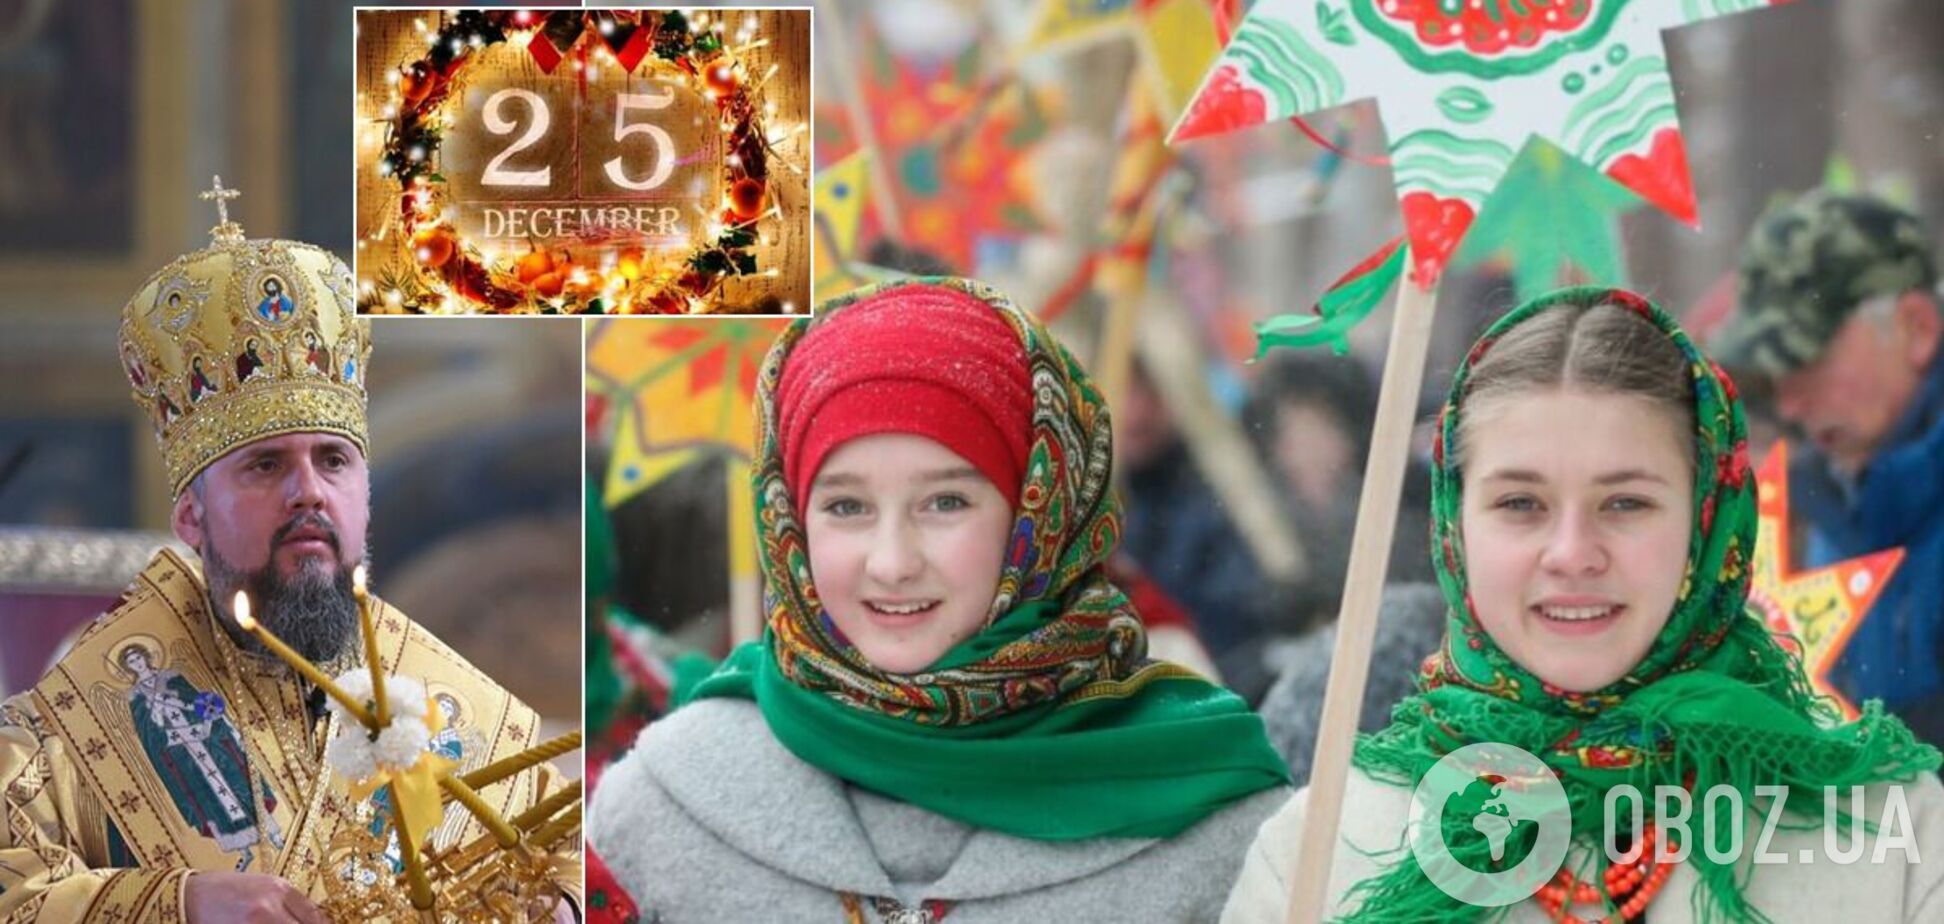 Епифаний пояснил, будет ли в Украине единое Рождество 25 декабря